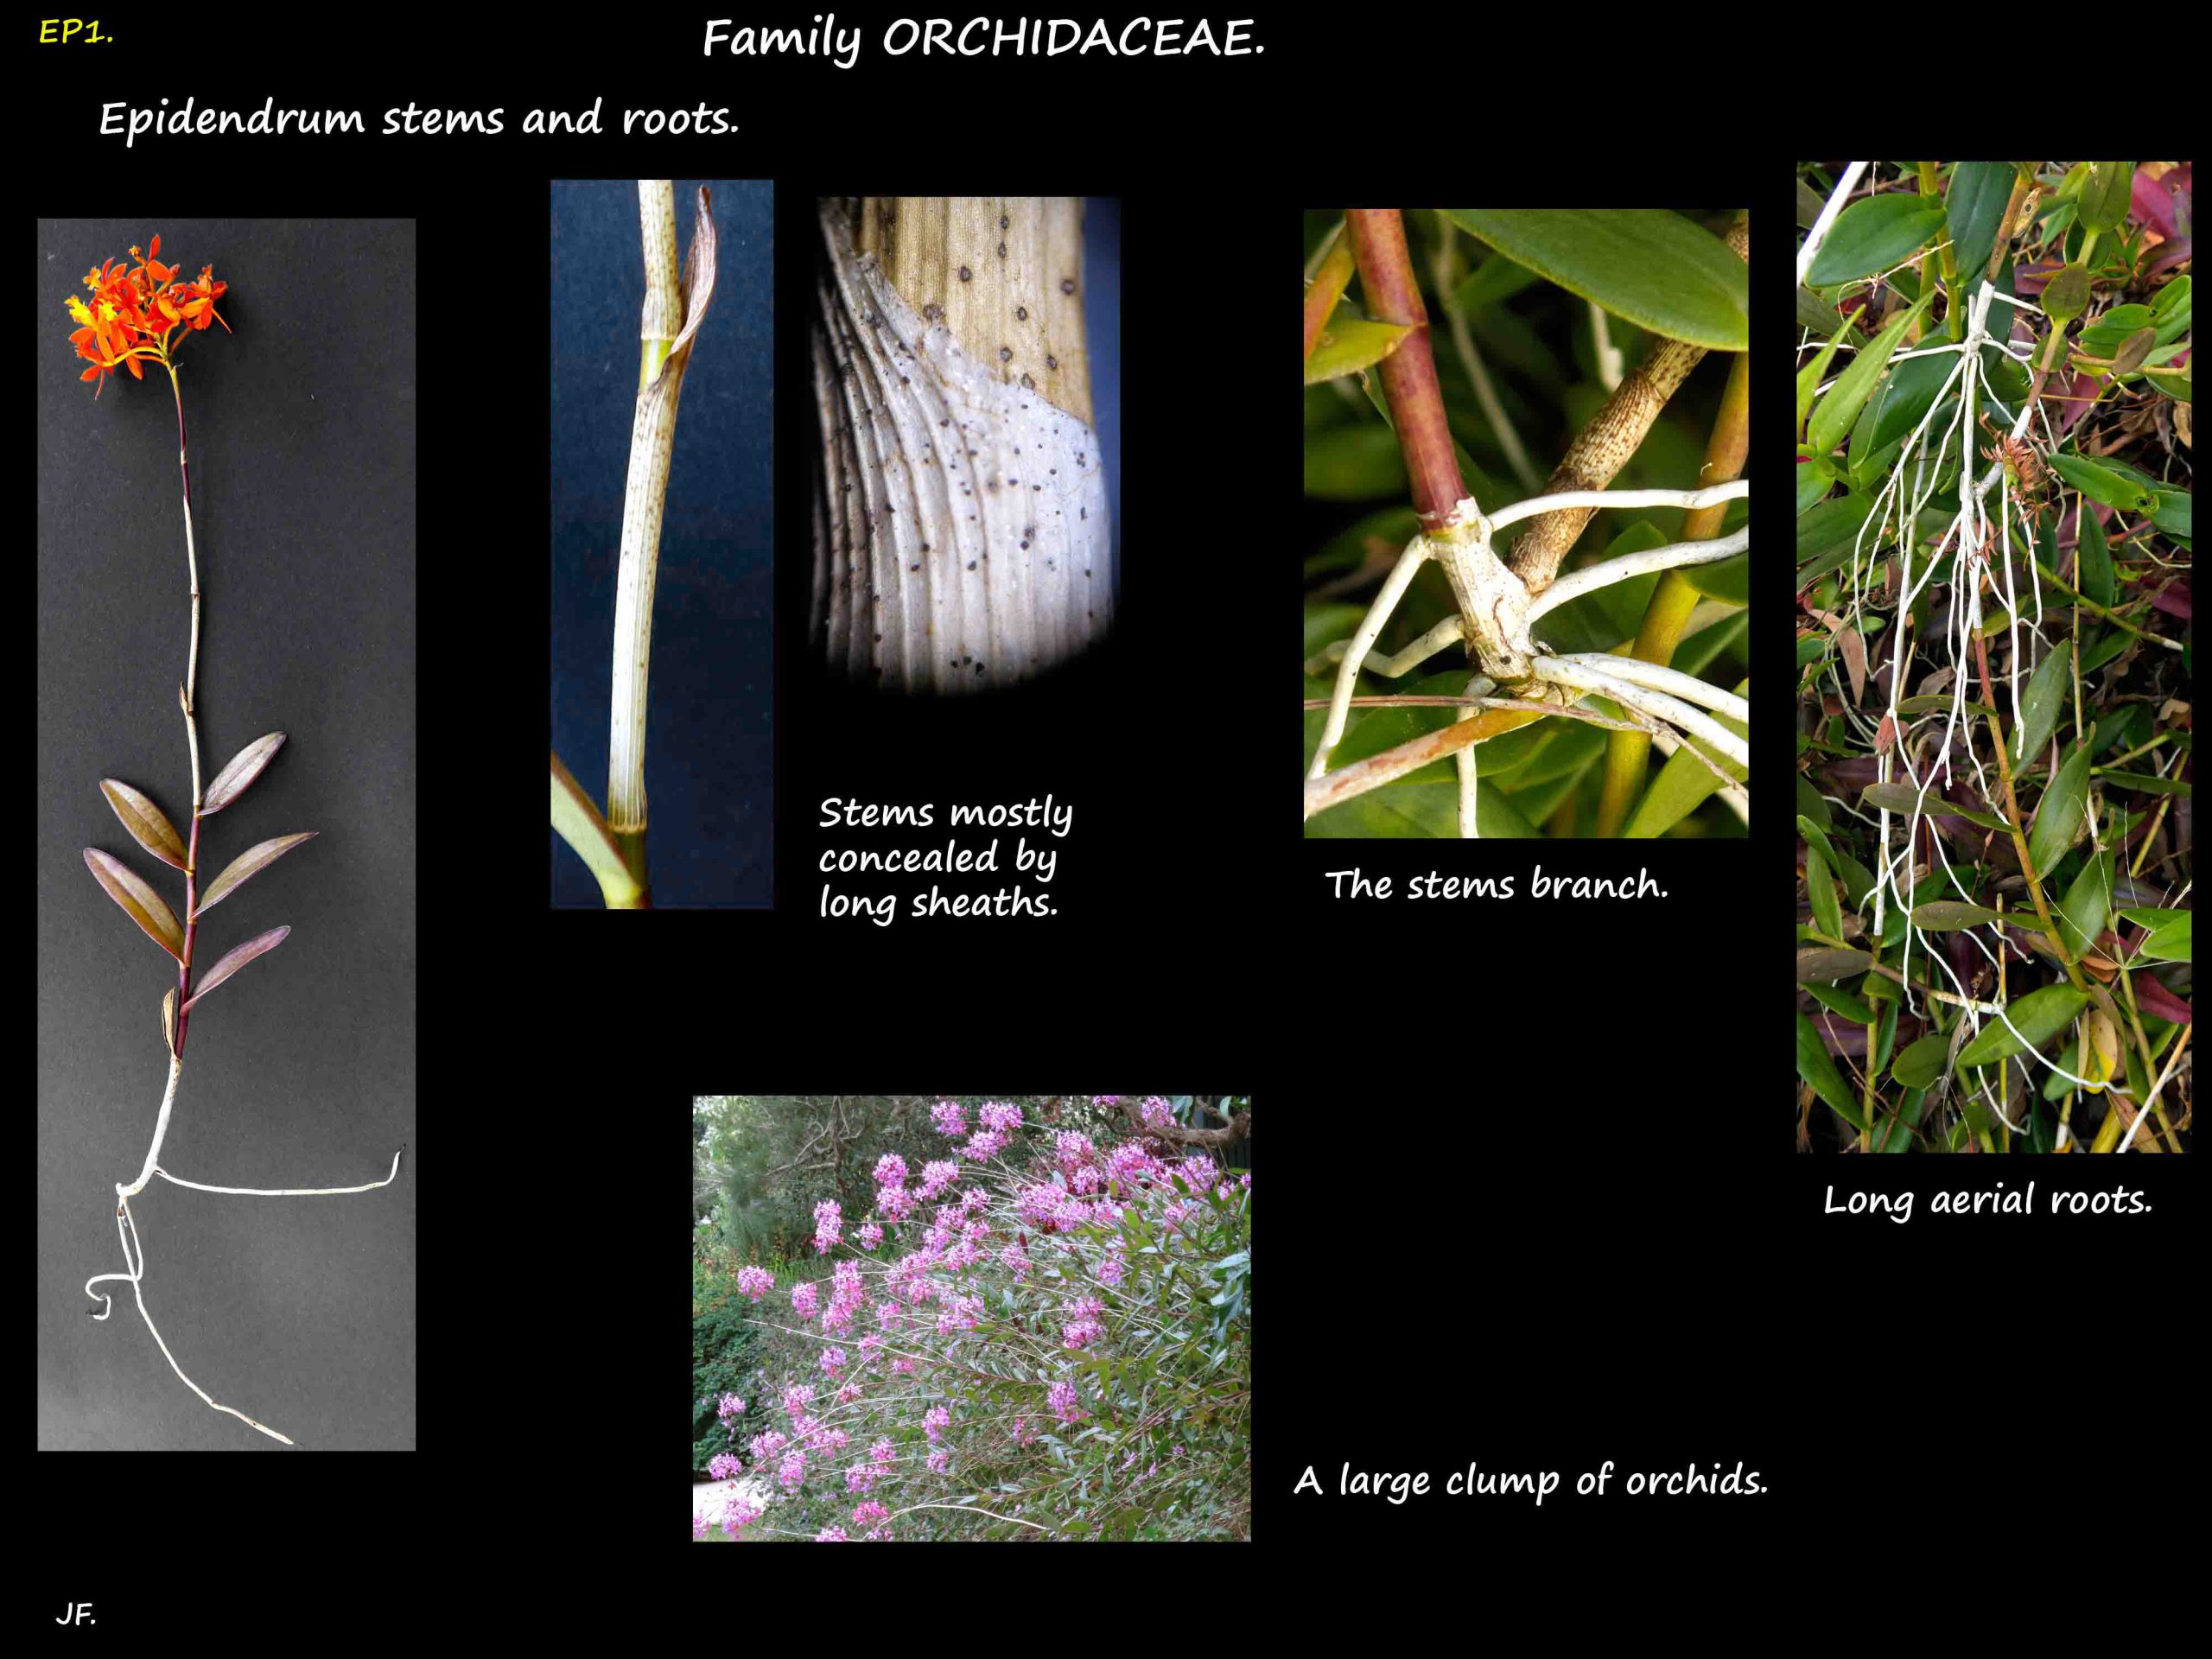 1 Epidendrum plants